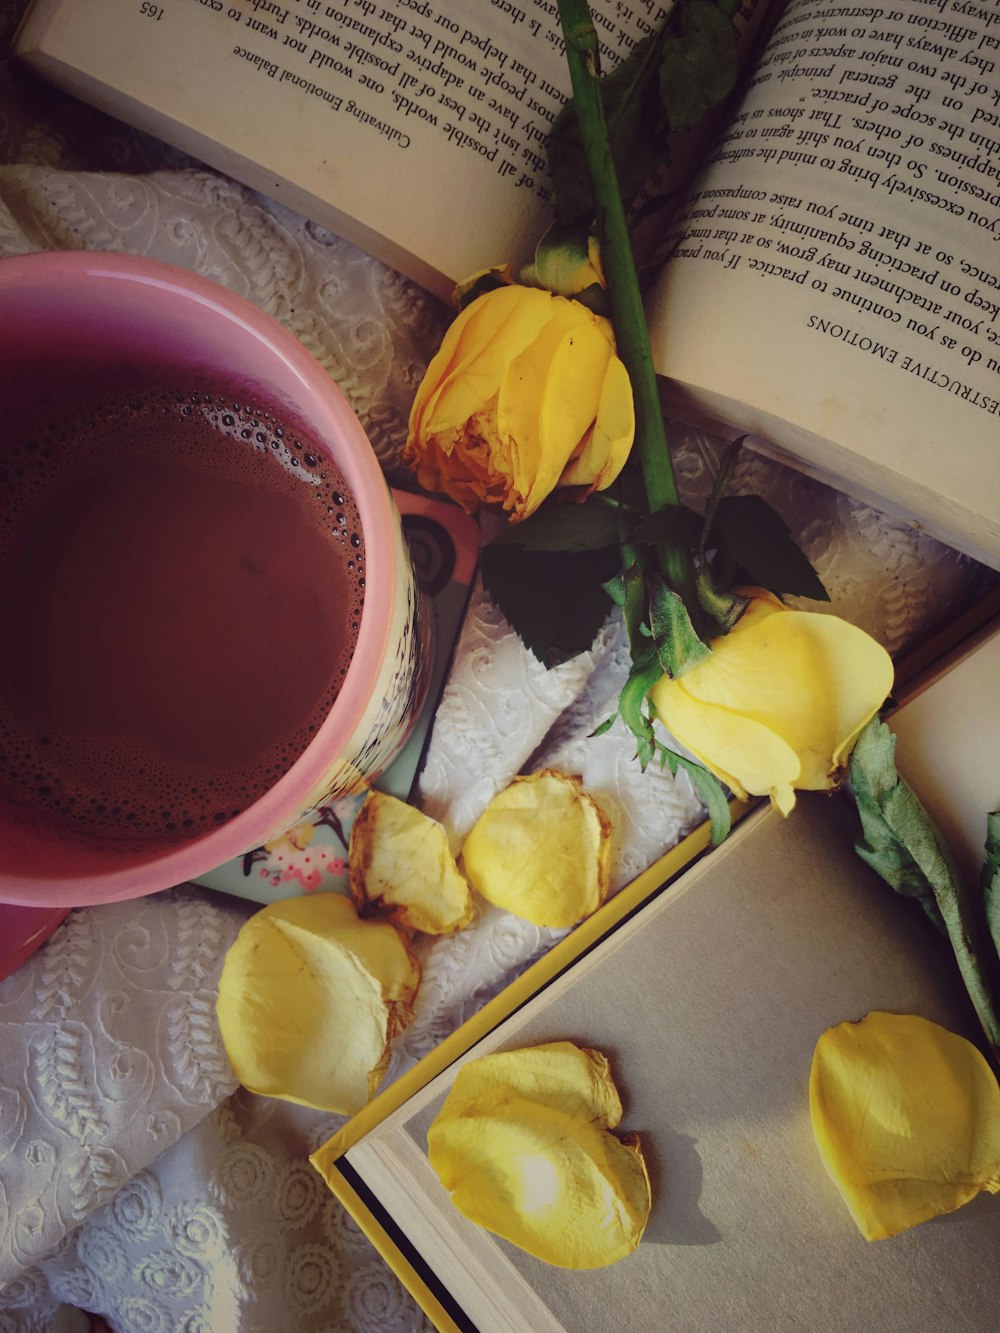 yellow roses beside red ceramic mug